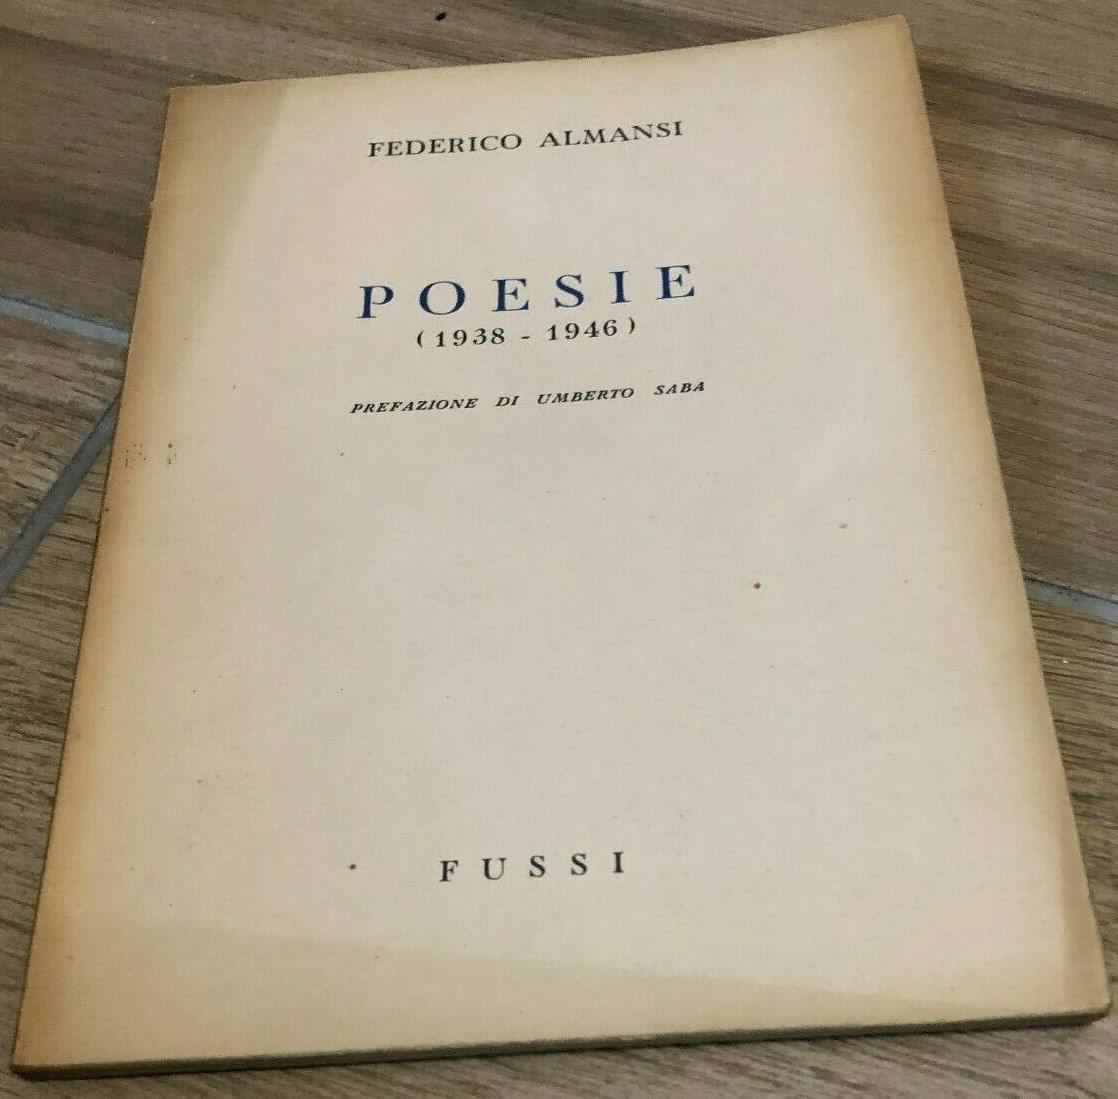 Una copia con invio autografo di “Poesie” di Federico Almansi (Fussi, 1948): il giovane amico di Umberto Saba